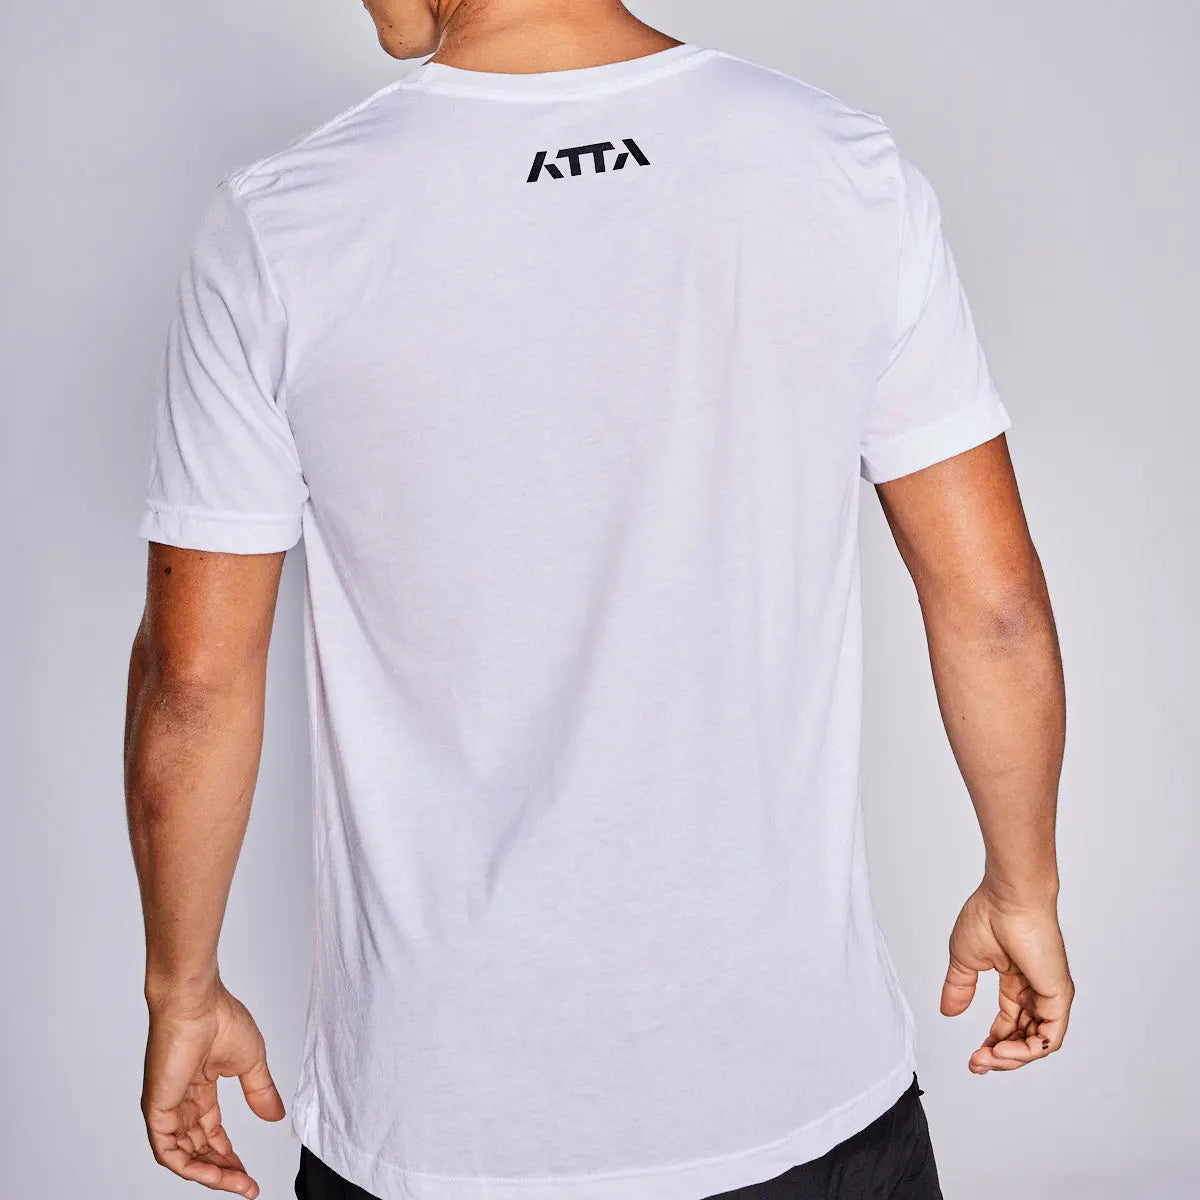 ATTA Mens Geometric A Tri-Blend Tee - White ATTA